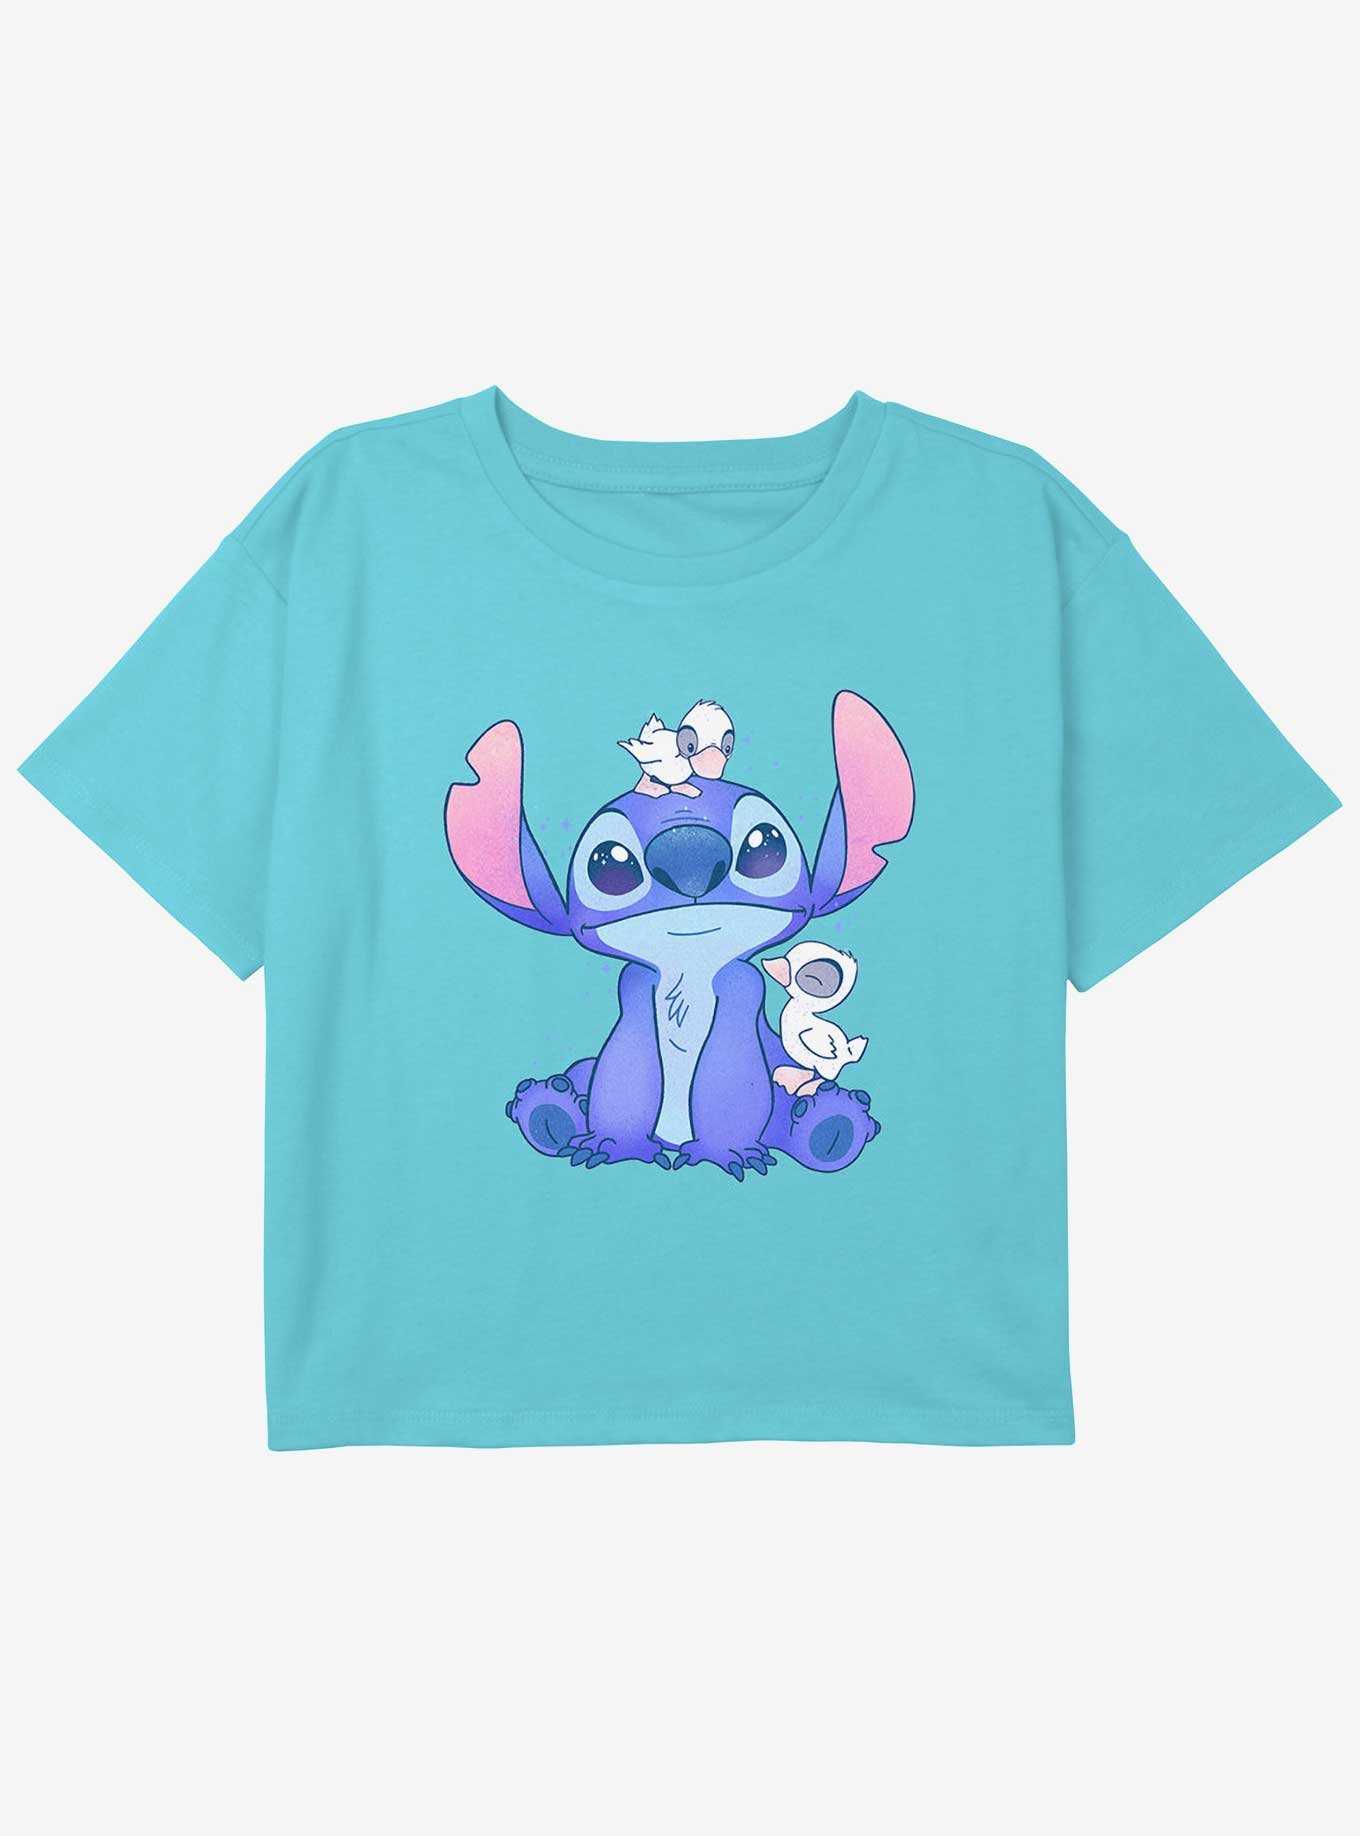 Disney Lilo & Stitch Cute Ducks Youth Girls Boxy Crop T-Shirt, , hi-res